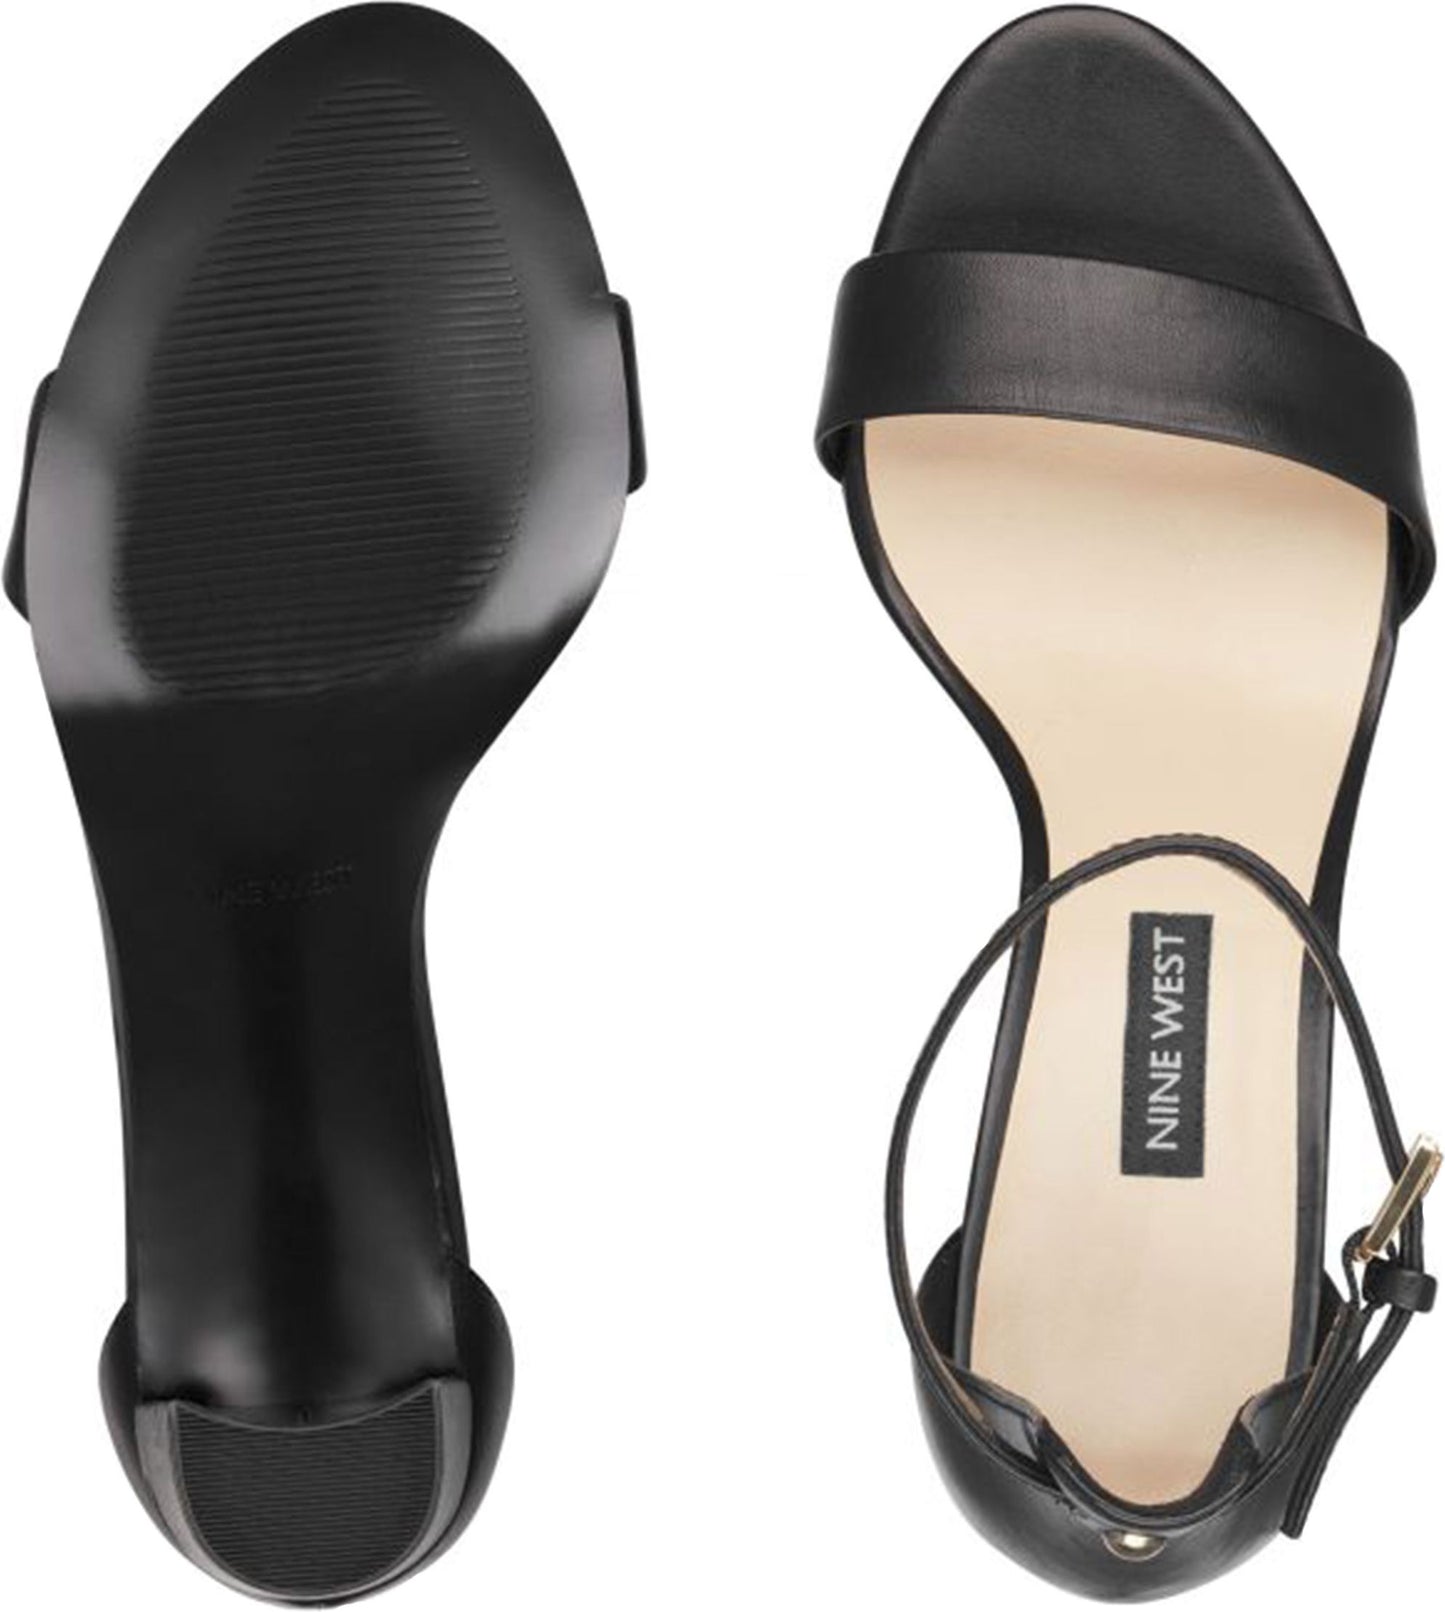 Nine West Sandals Pruce Black Ankle Strap Sandal